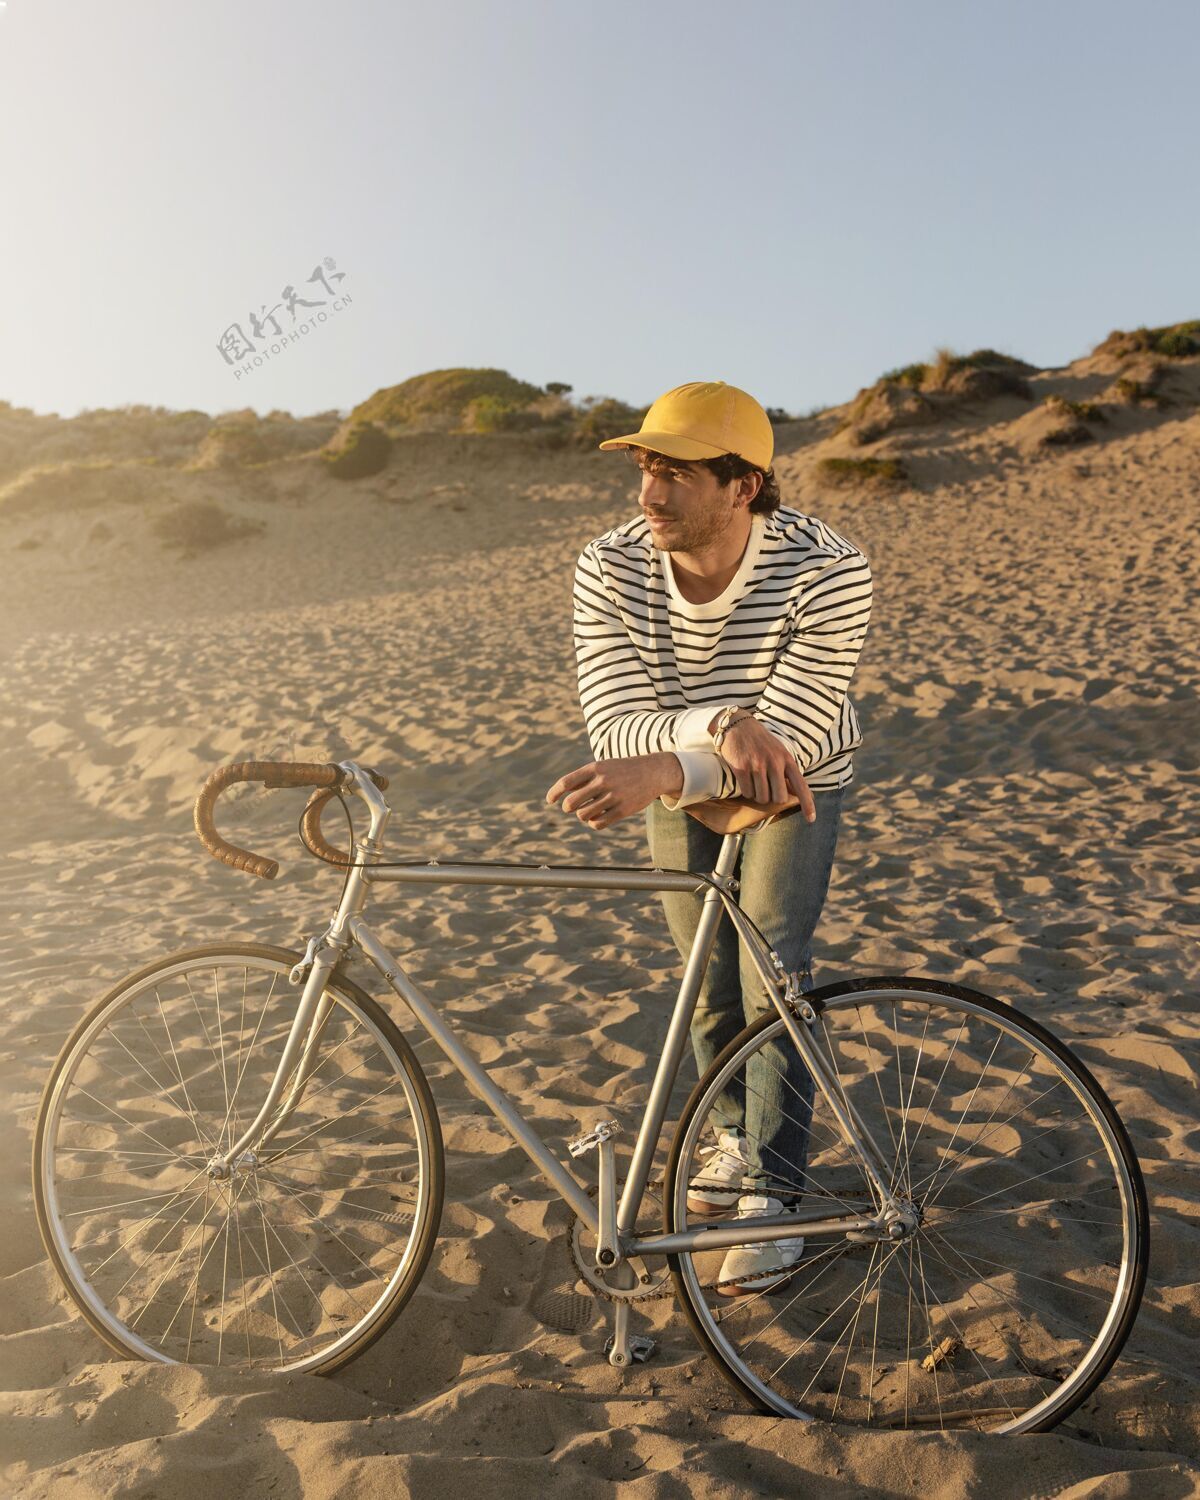 自行车在沙滩上骑自行车的人垂直健康户外